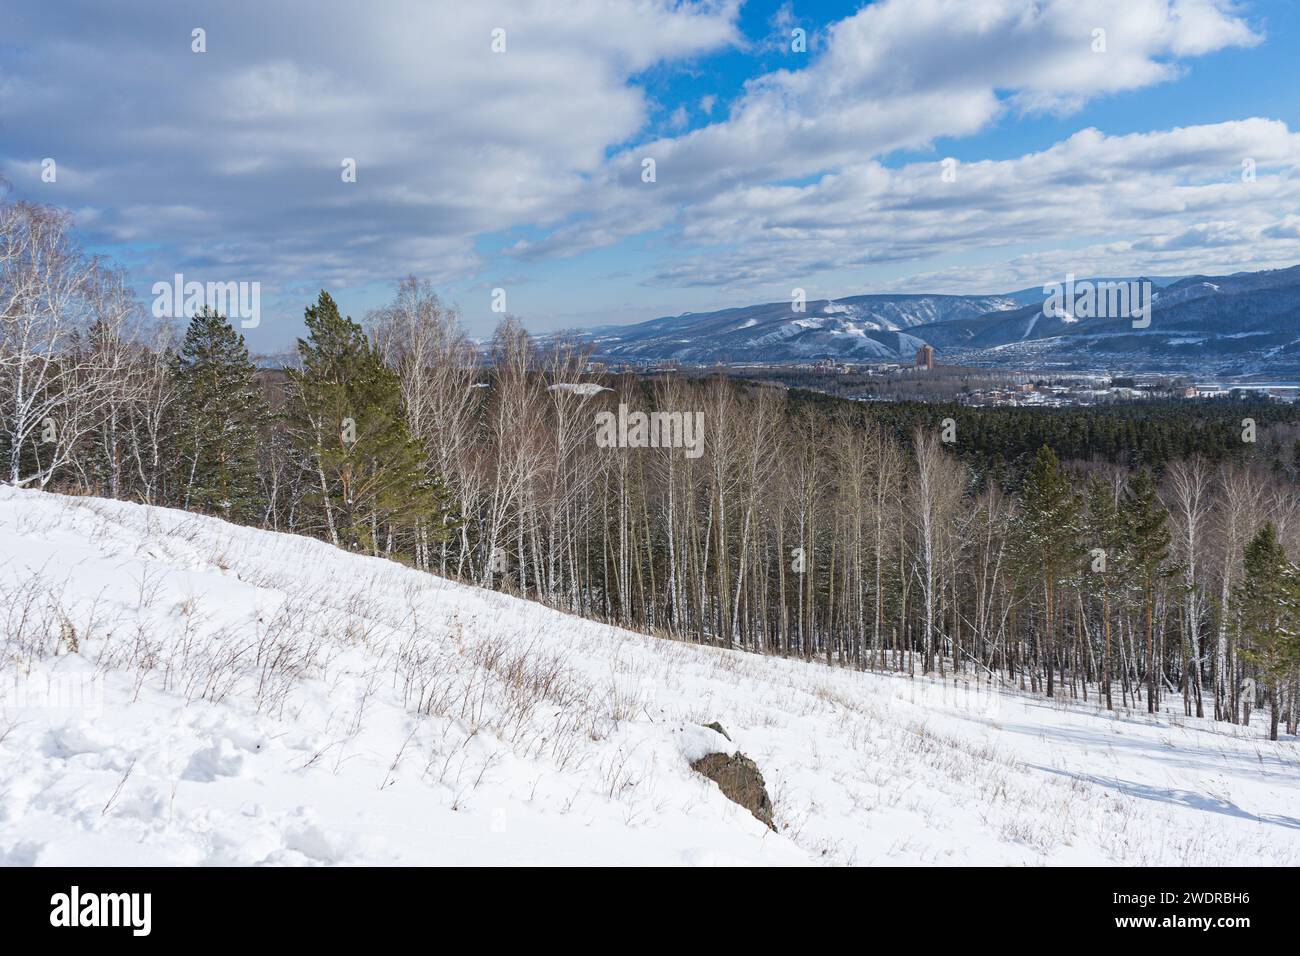 Wandern in der Nähe der Stadt. Stadtviertel und Natur. Winterlandschaft. Blauer Himmel mit niedrigen weißen Wolken. Gremyachaya Griva Park, Krasnojarsk, Russ Stockfoto